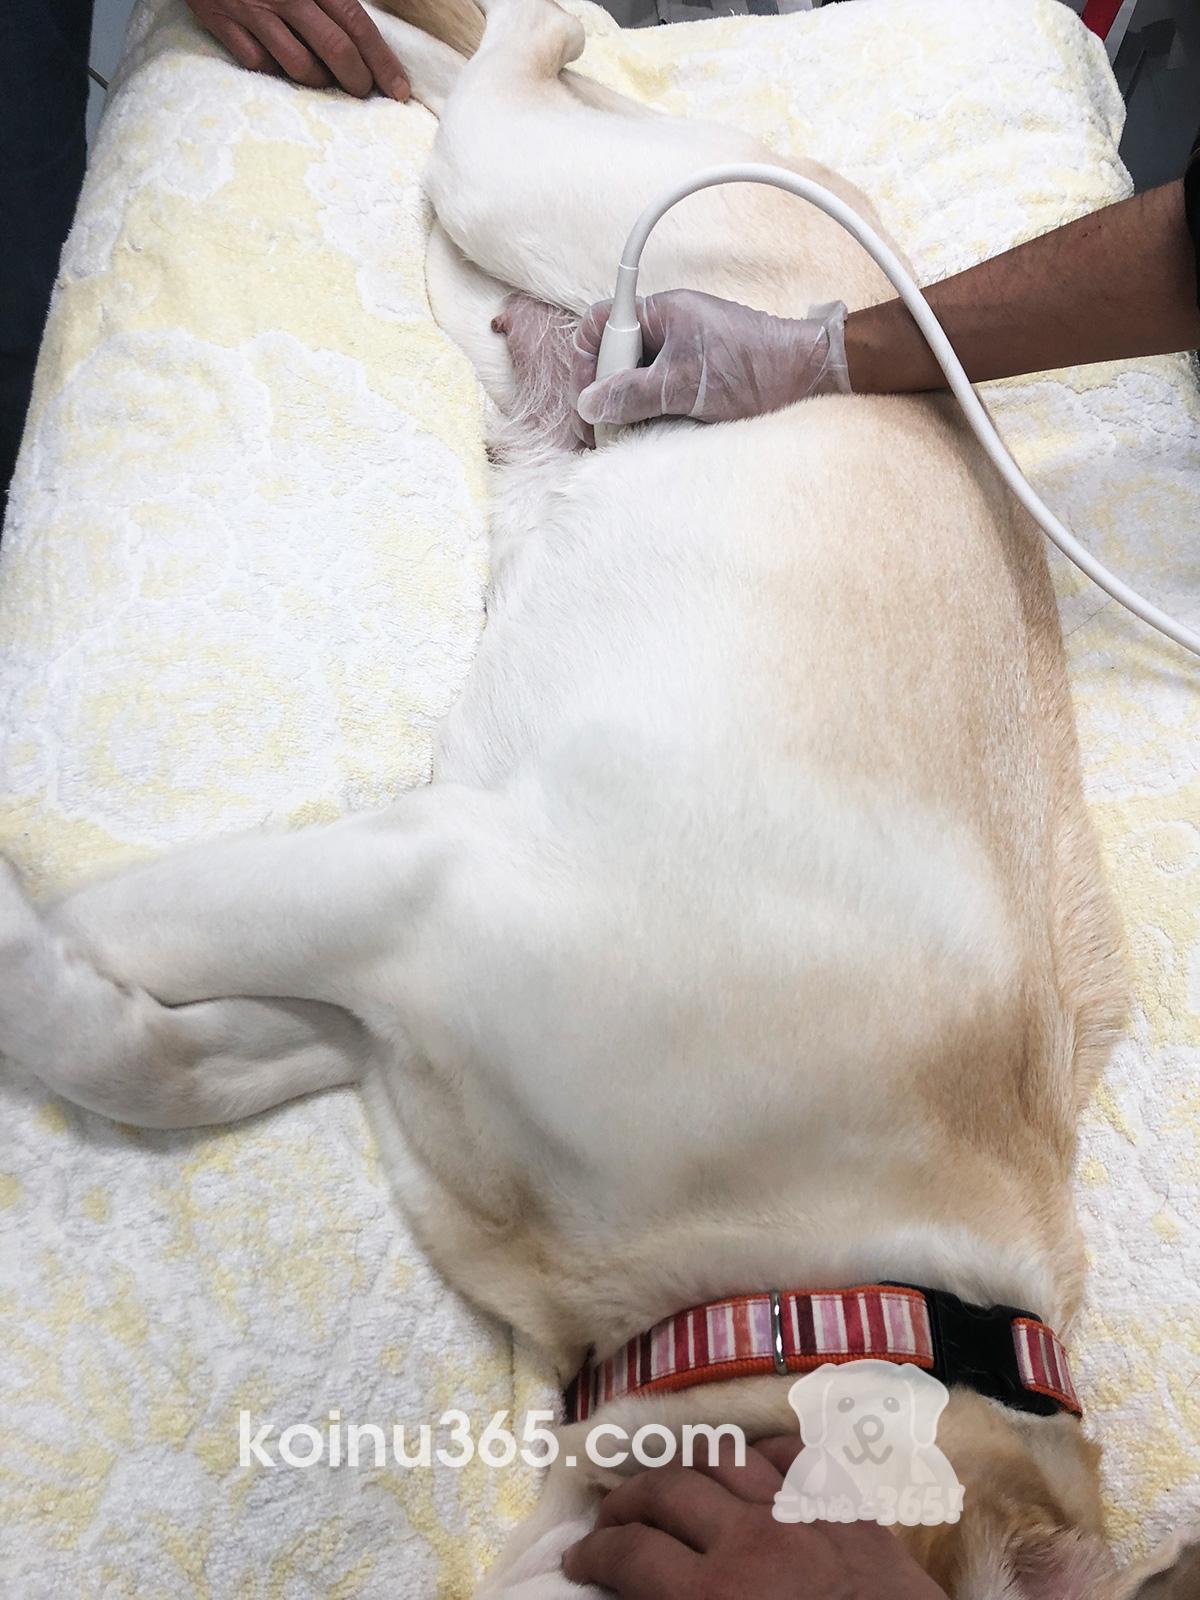 繁殖犬ボランティア体験記 2回目のエコー 犬の妊娠検診 こいぬと365 パピーウォーカー 盲導犬情報 交流サイト